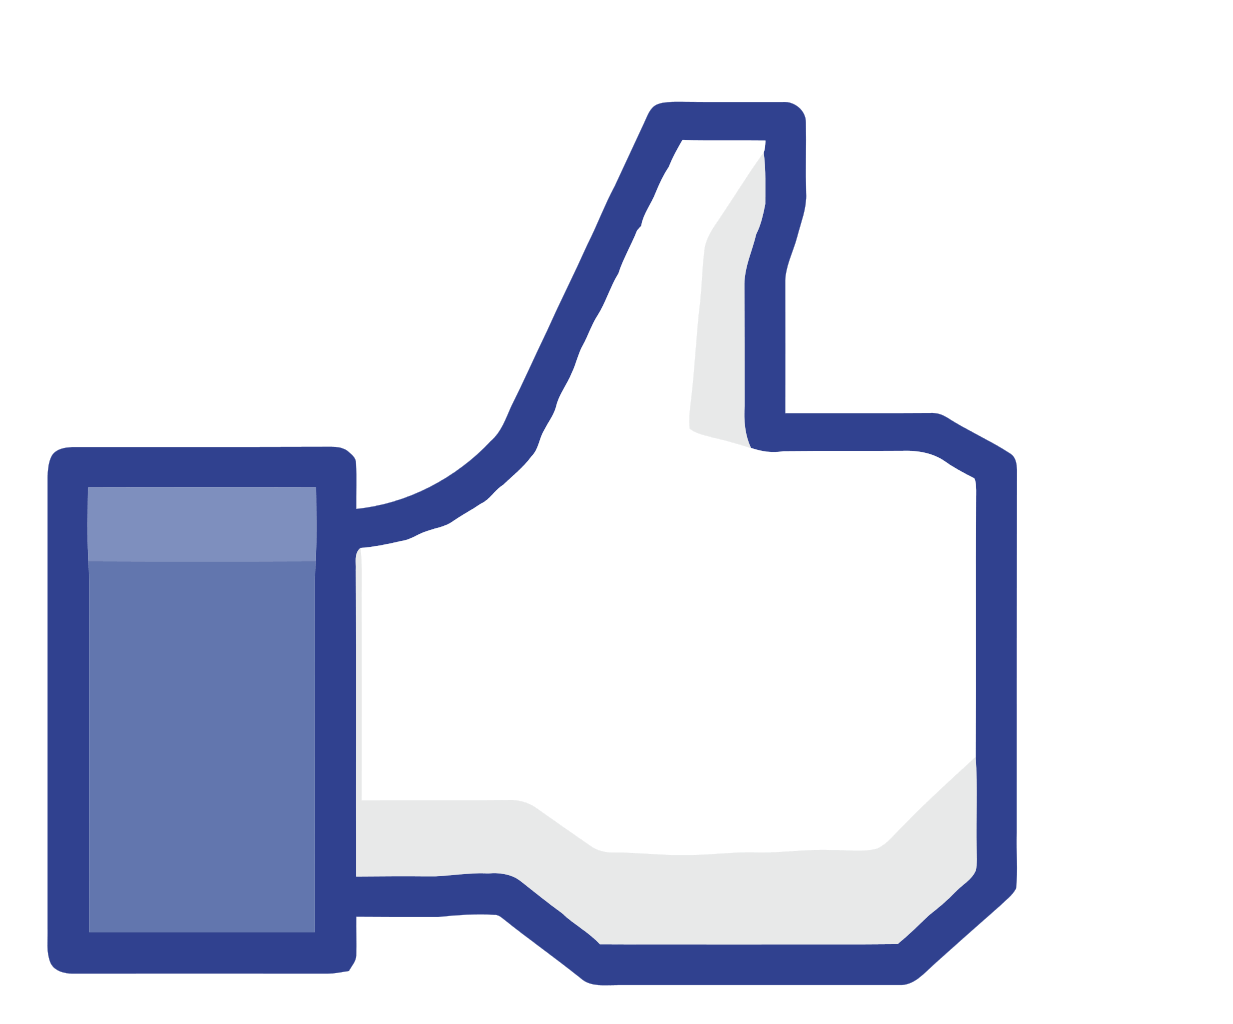 Facebook thumbs up logo